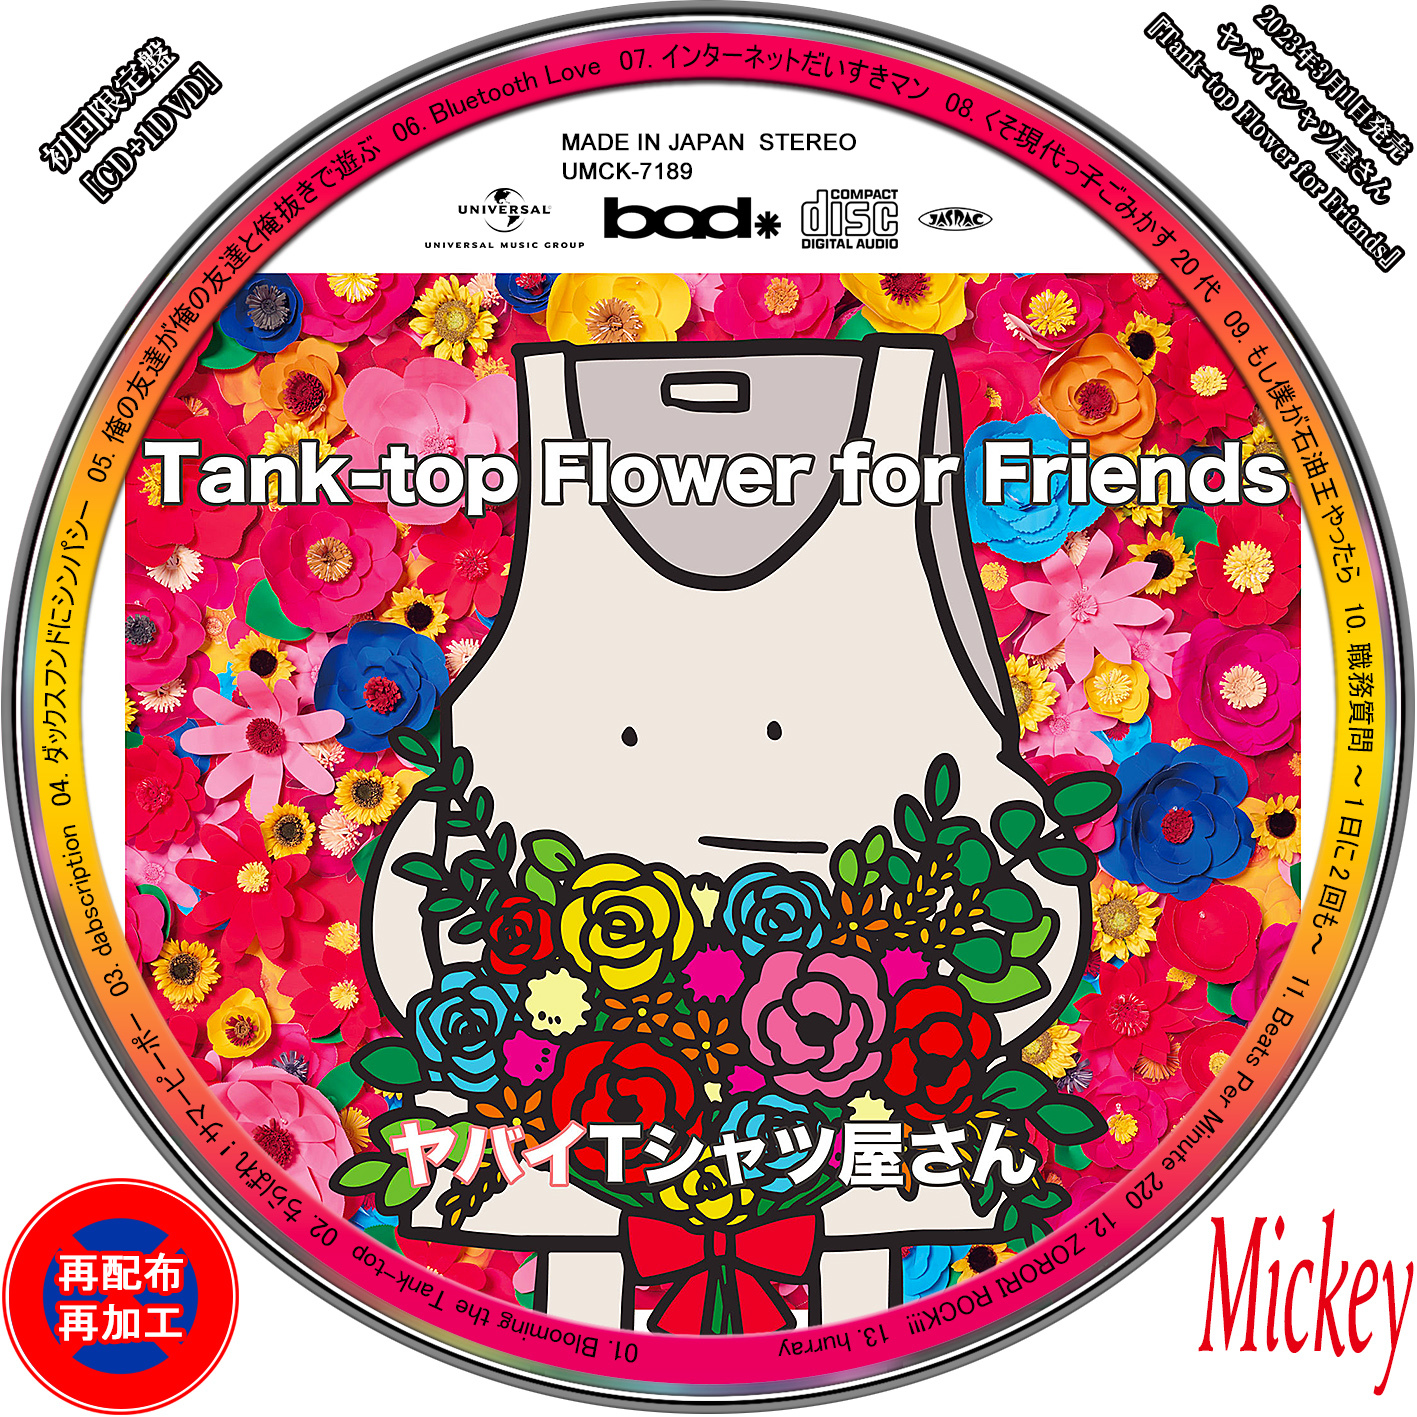 ヤバイTシャツ屋さん『Tank-top Flower for Friends』【完全生産限定盤